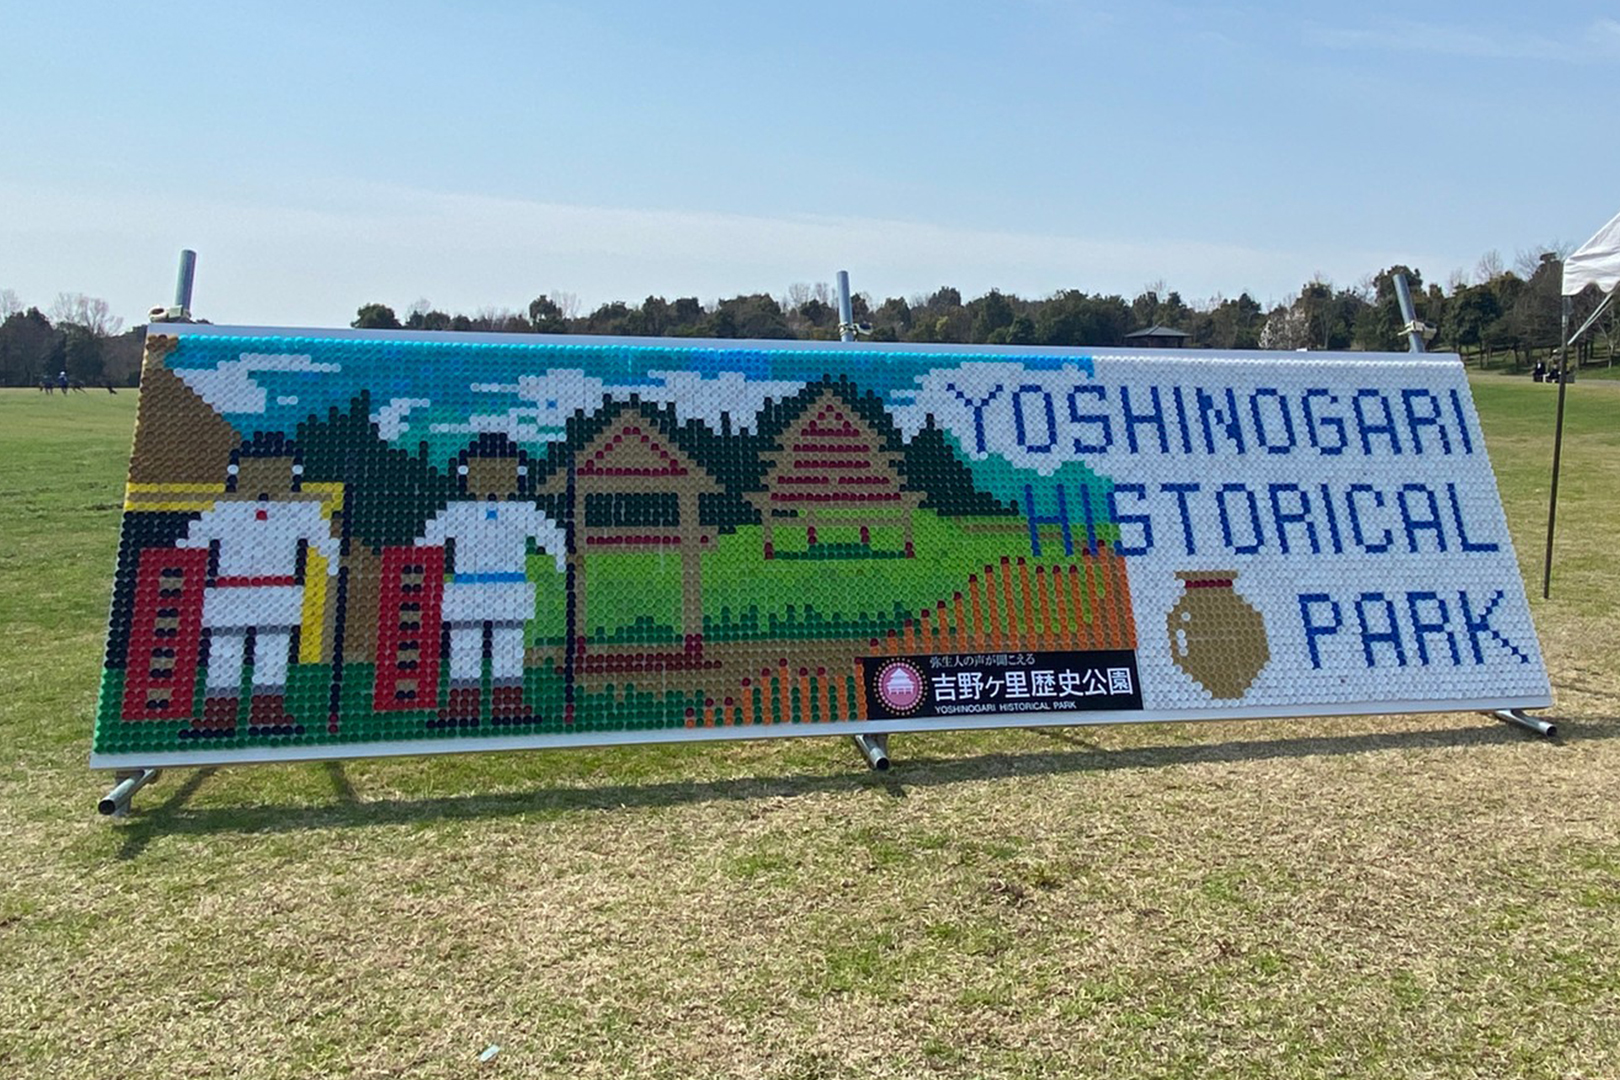 ペットボトルキャップモザイクアート制作 佐賀県立吉野ケ里歴史公園